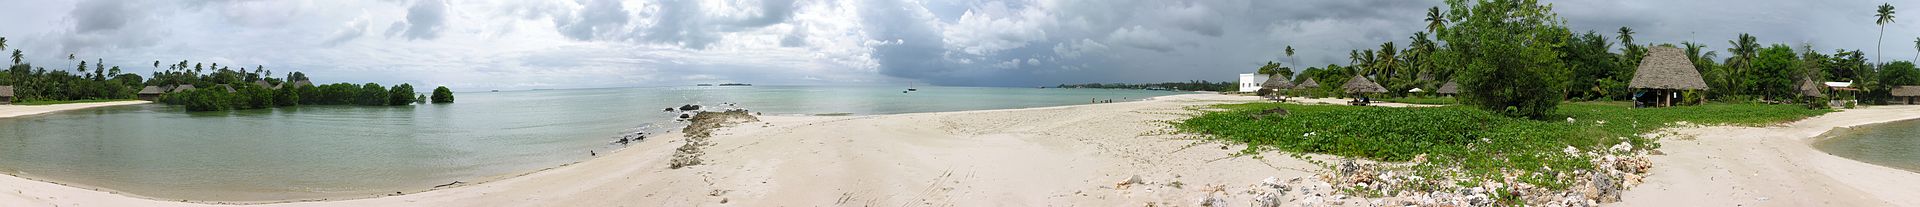 Strand auf Sansibar (c) Hansueli Krapf CC BY SA 3.0